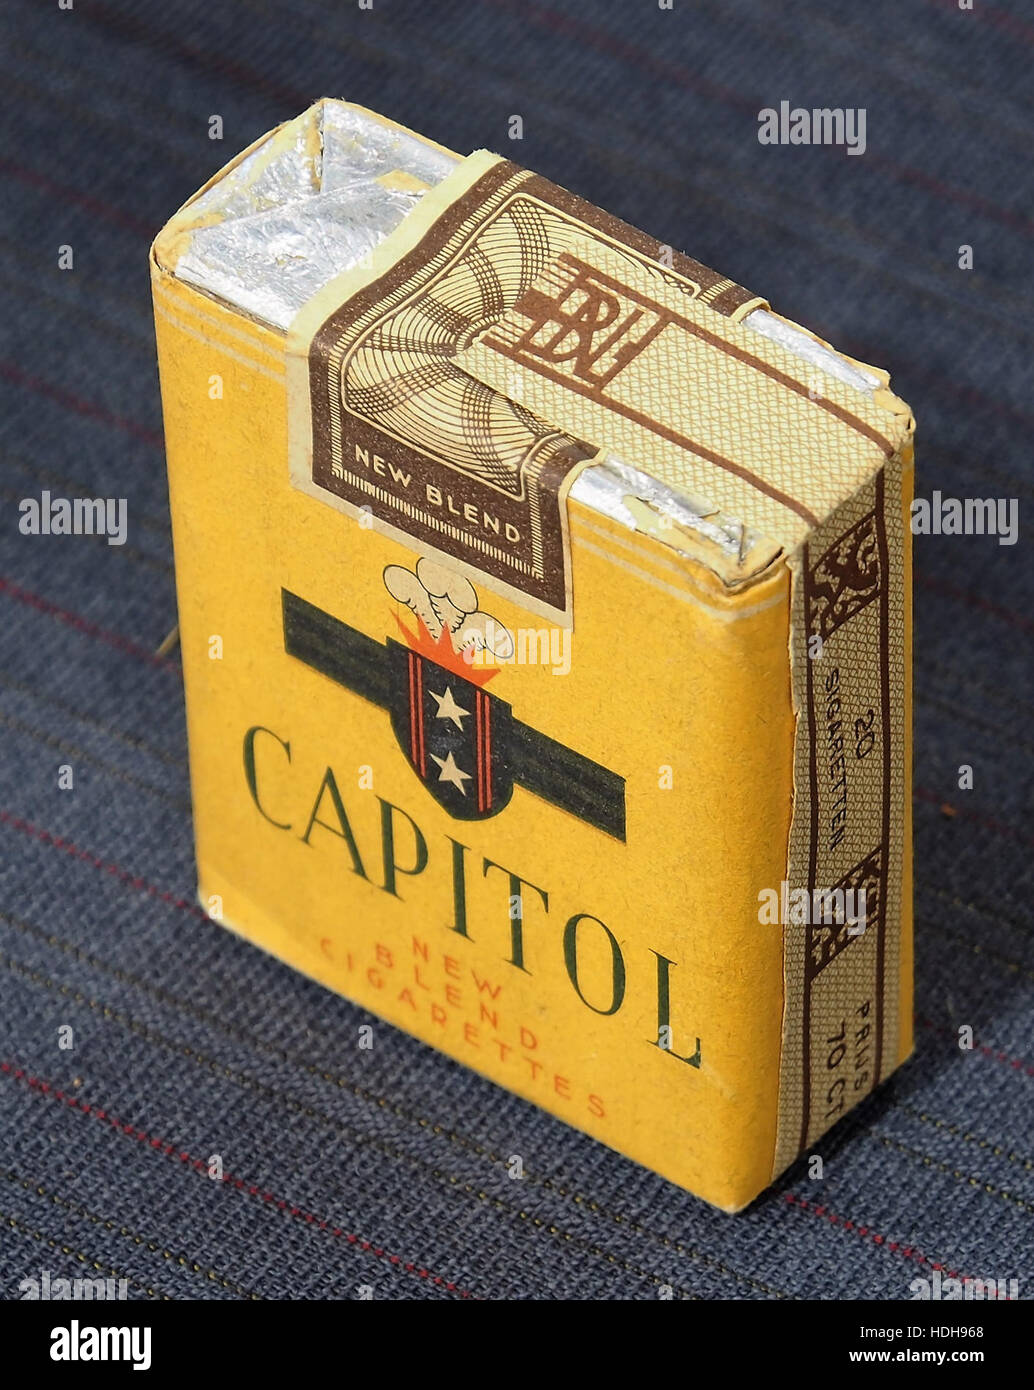 Capitol cigarettes pack pic3 Banque D'Images